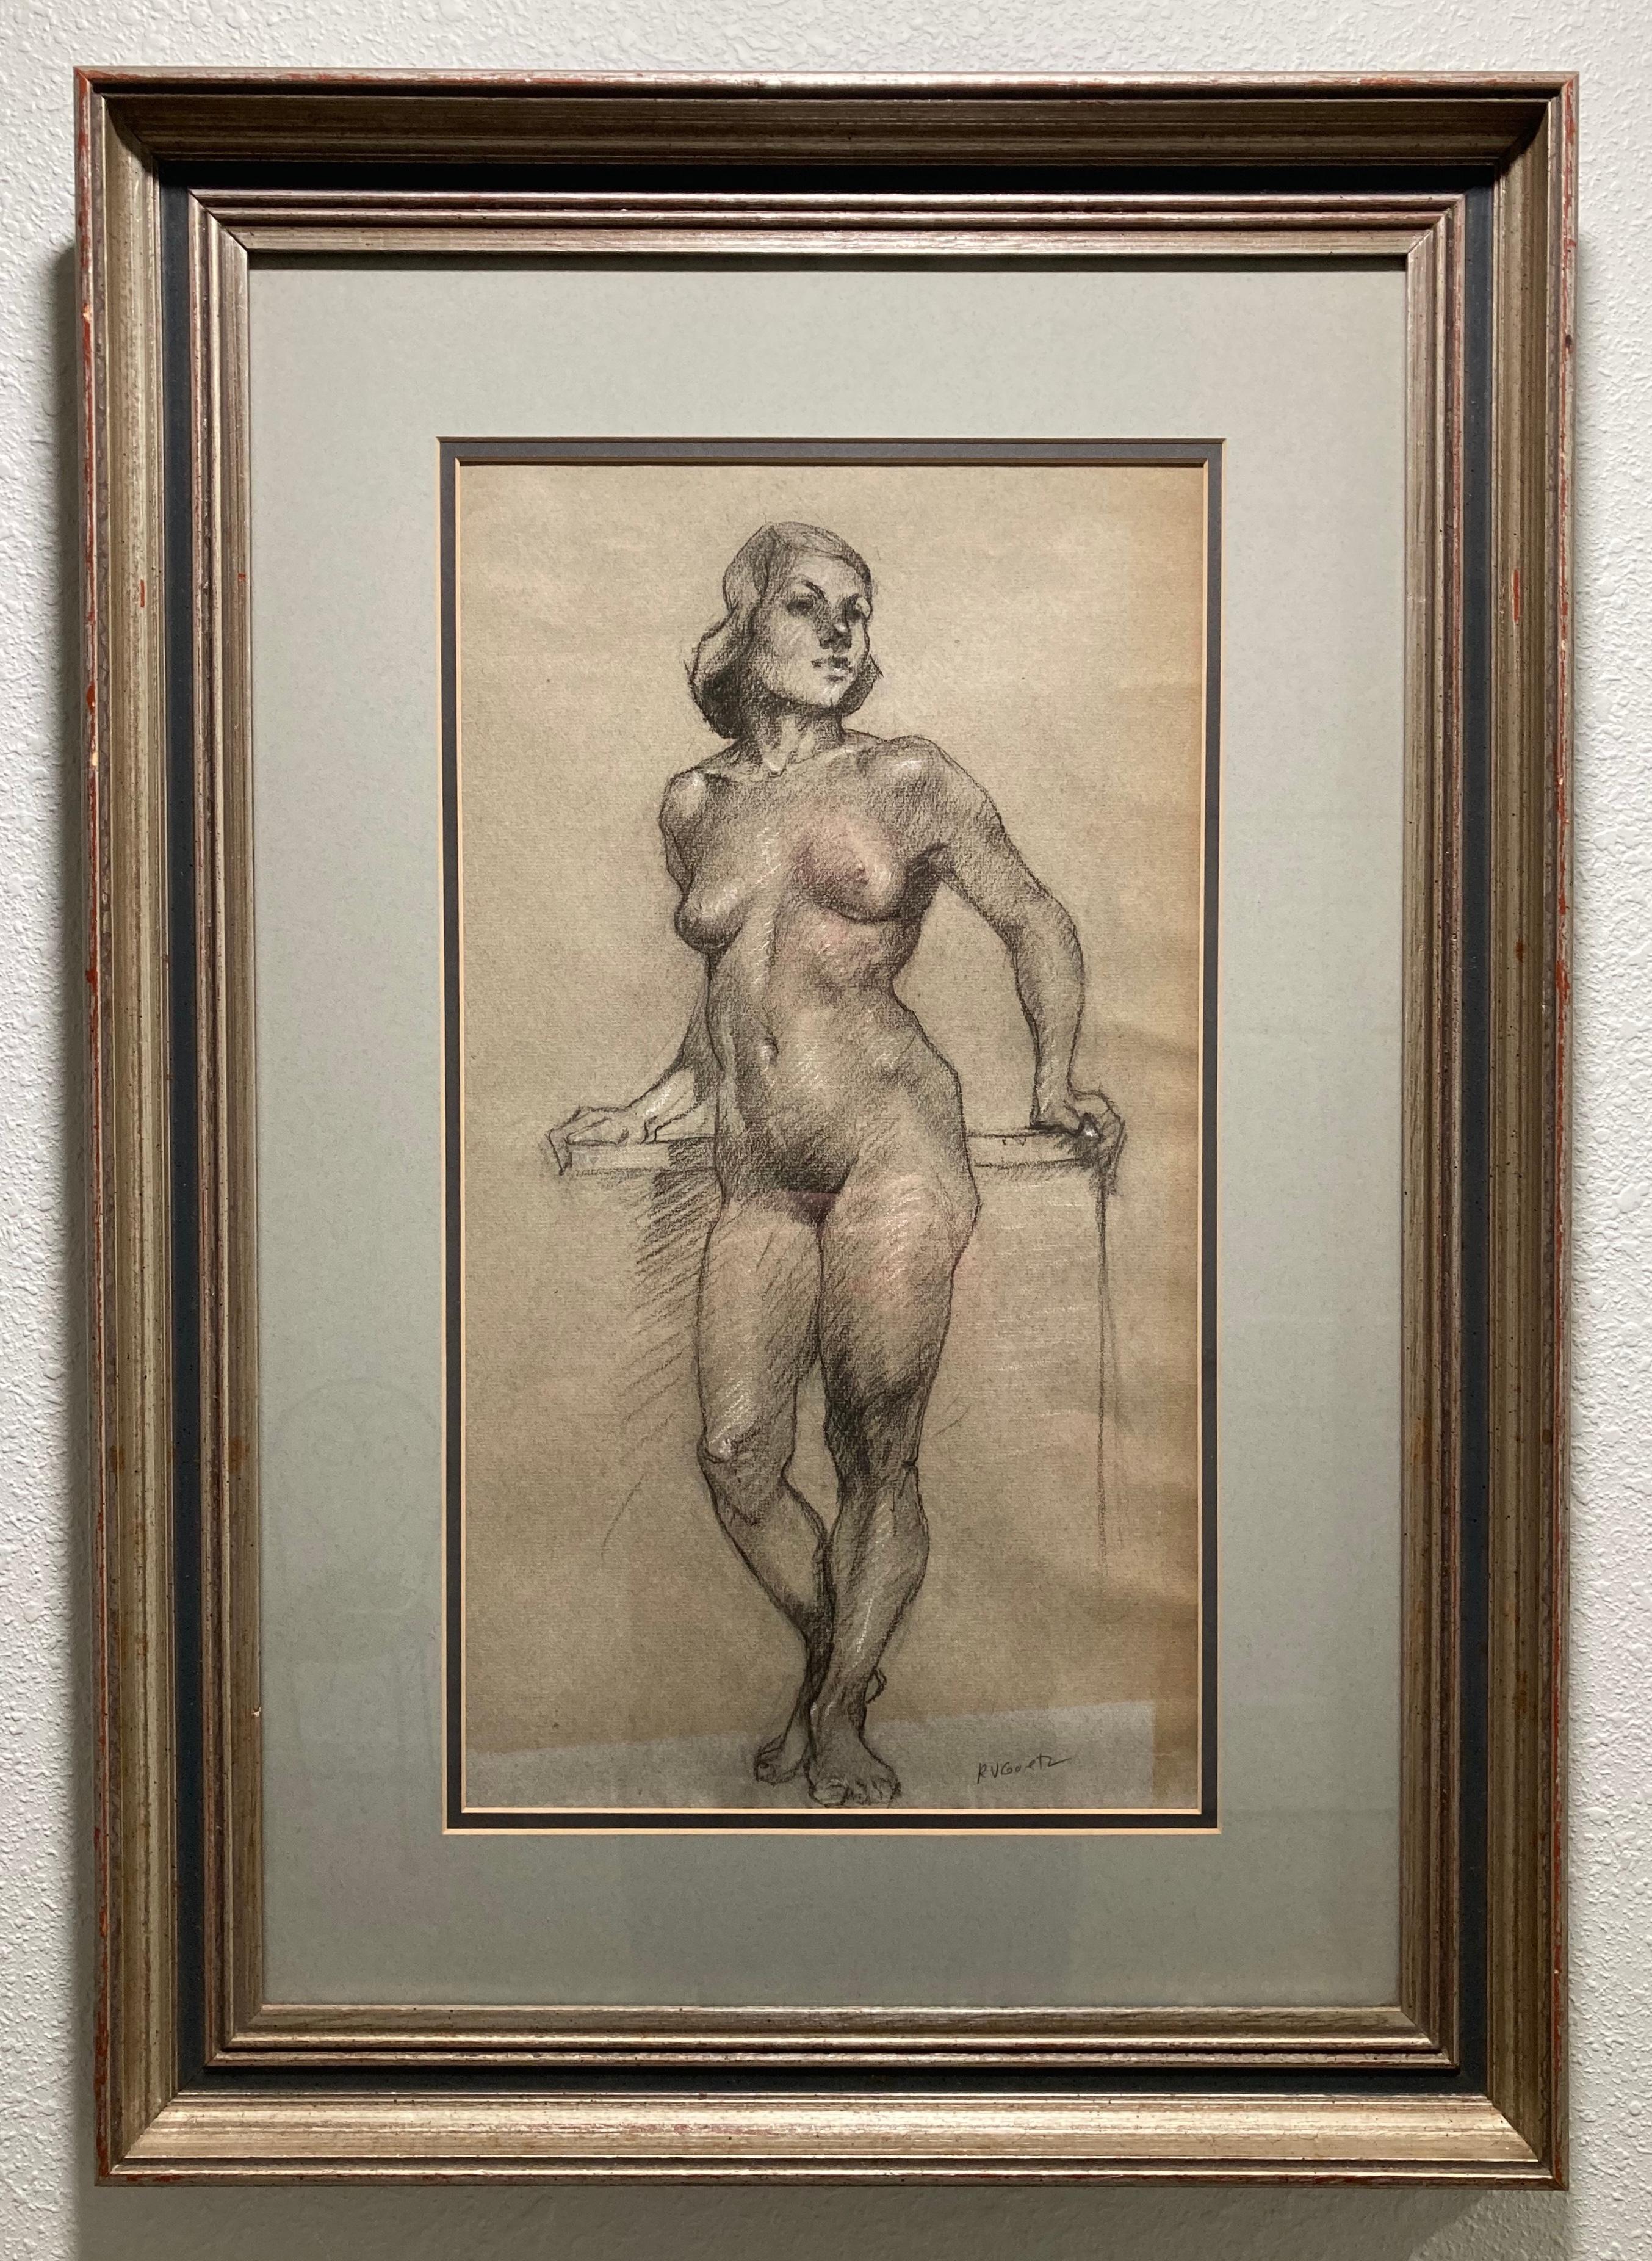 Ce dessin sur papier de Richard Vernon Goetz, datant du milieu du 20e siècle, représente un nu féminin debout, rendu par des hachures noires et grises au fusain et au crayon Conté.
Le poids de la figure très droite repose sur le pied gauche qui est